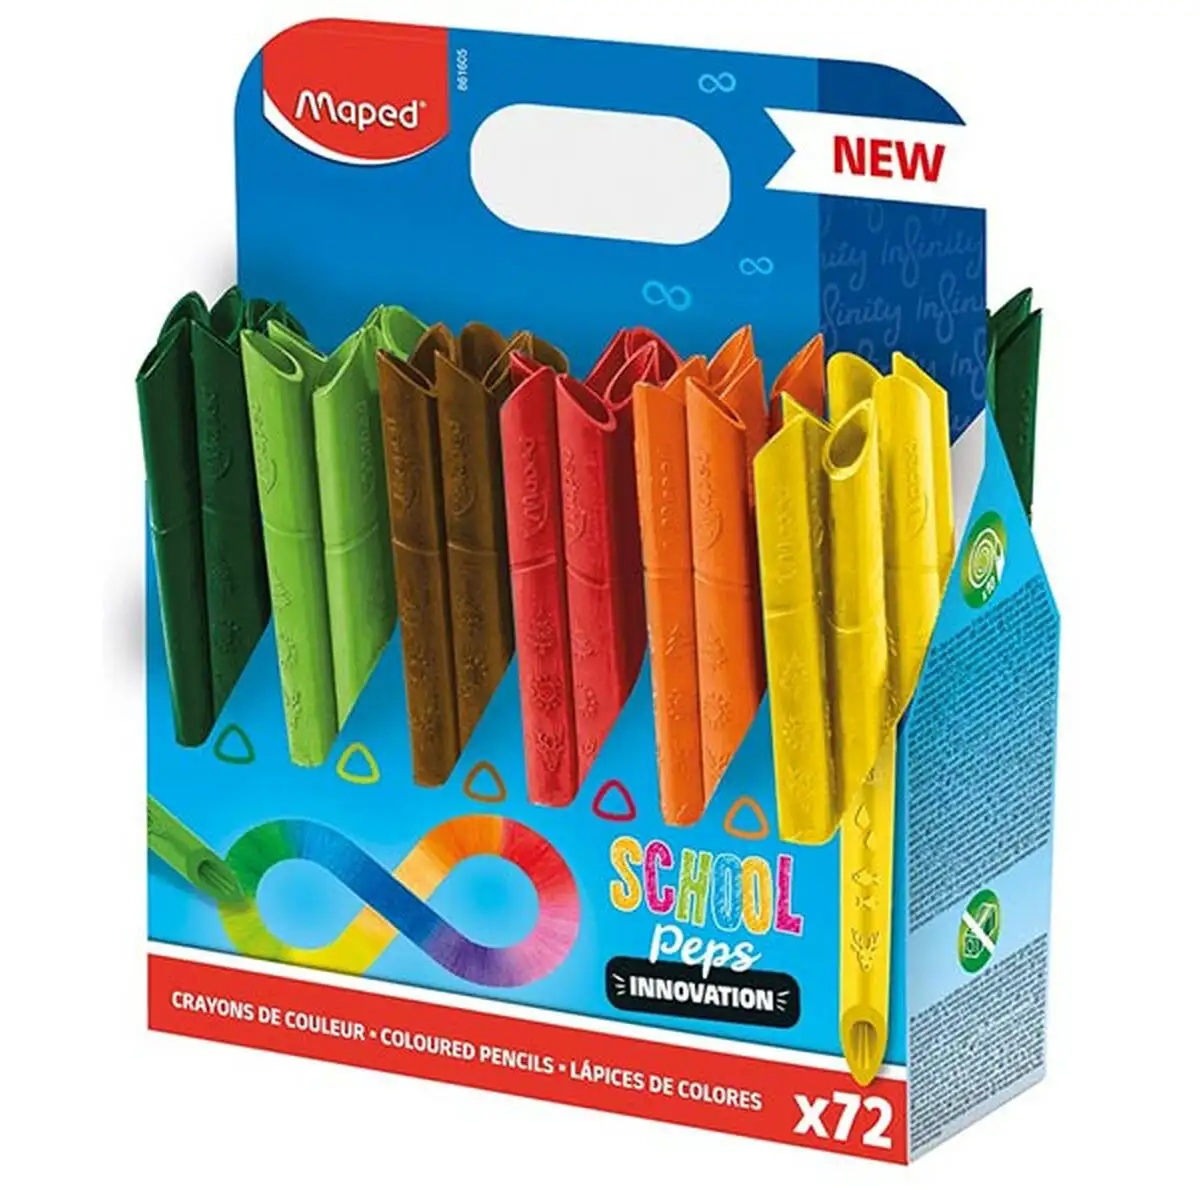 Crayons de couleur maped infinity 72 pieces multicouleur_5463. DIAYTAR SENEGAL - Votre Destination pour un Shopping Réfléchi. Découvrez notre gamme variée et choisissez des produits qui correspondent à vos valeurs et à votre style de vie.